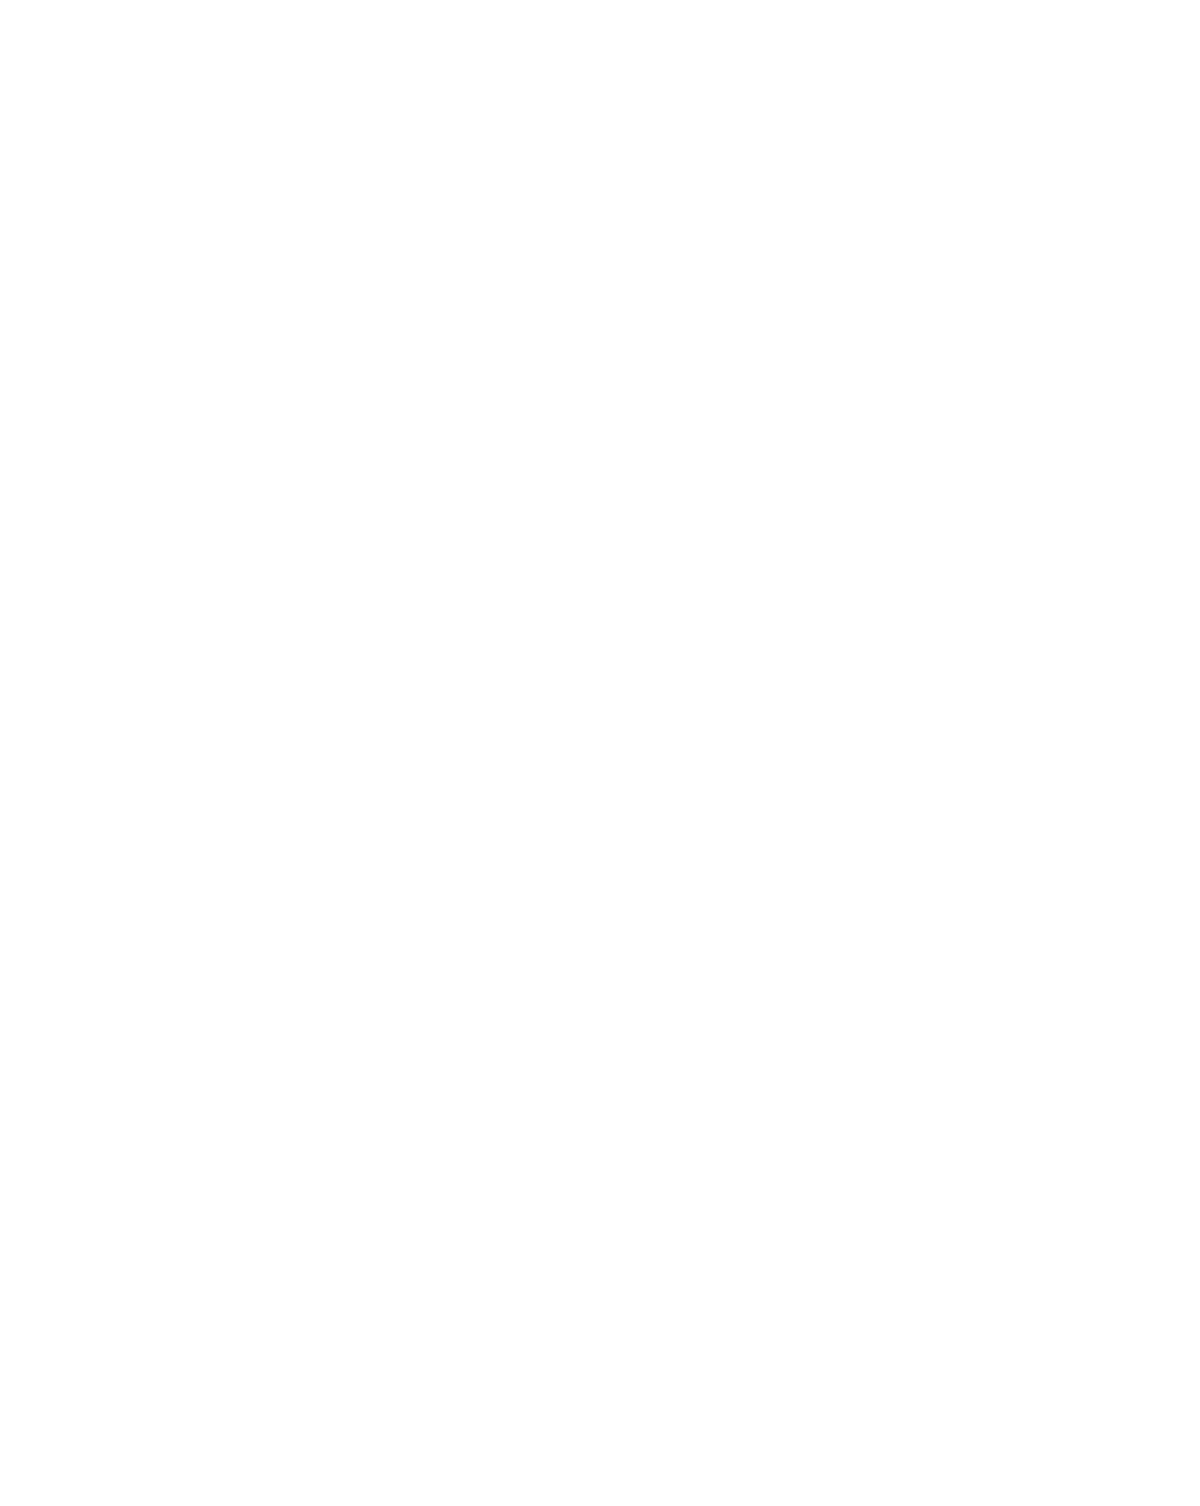 Pool Tech Logo